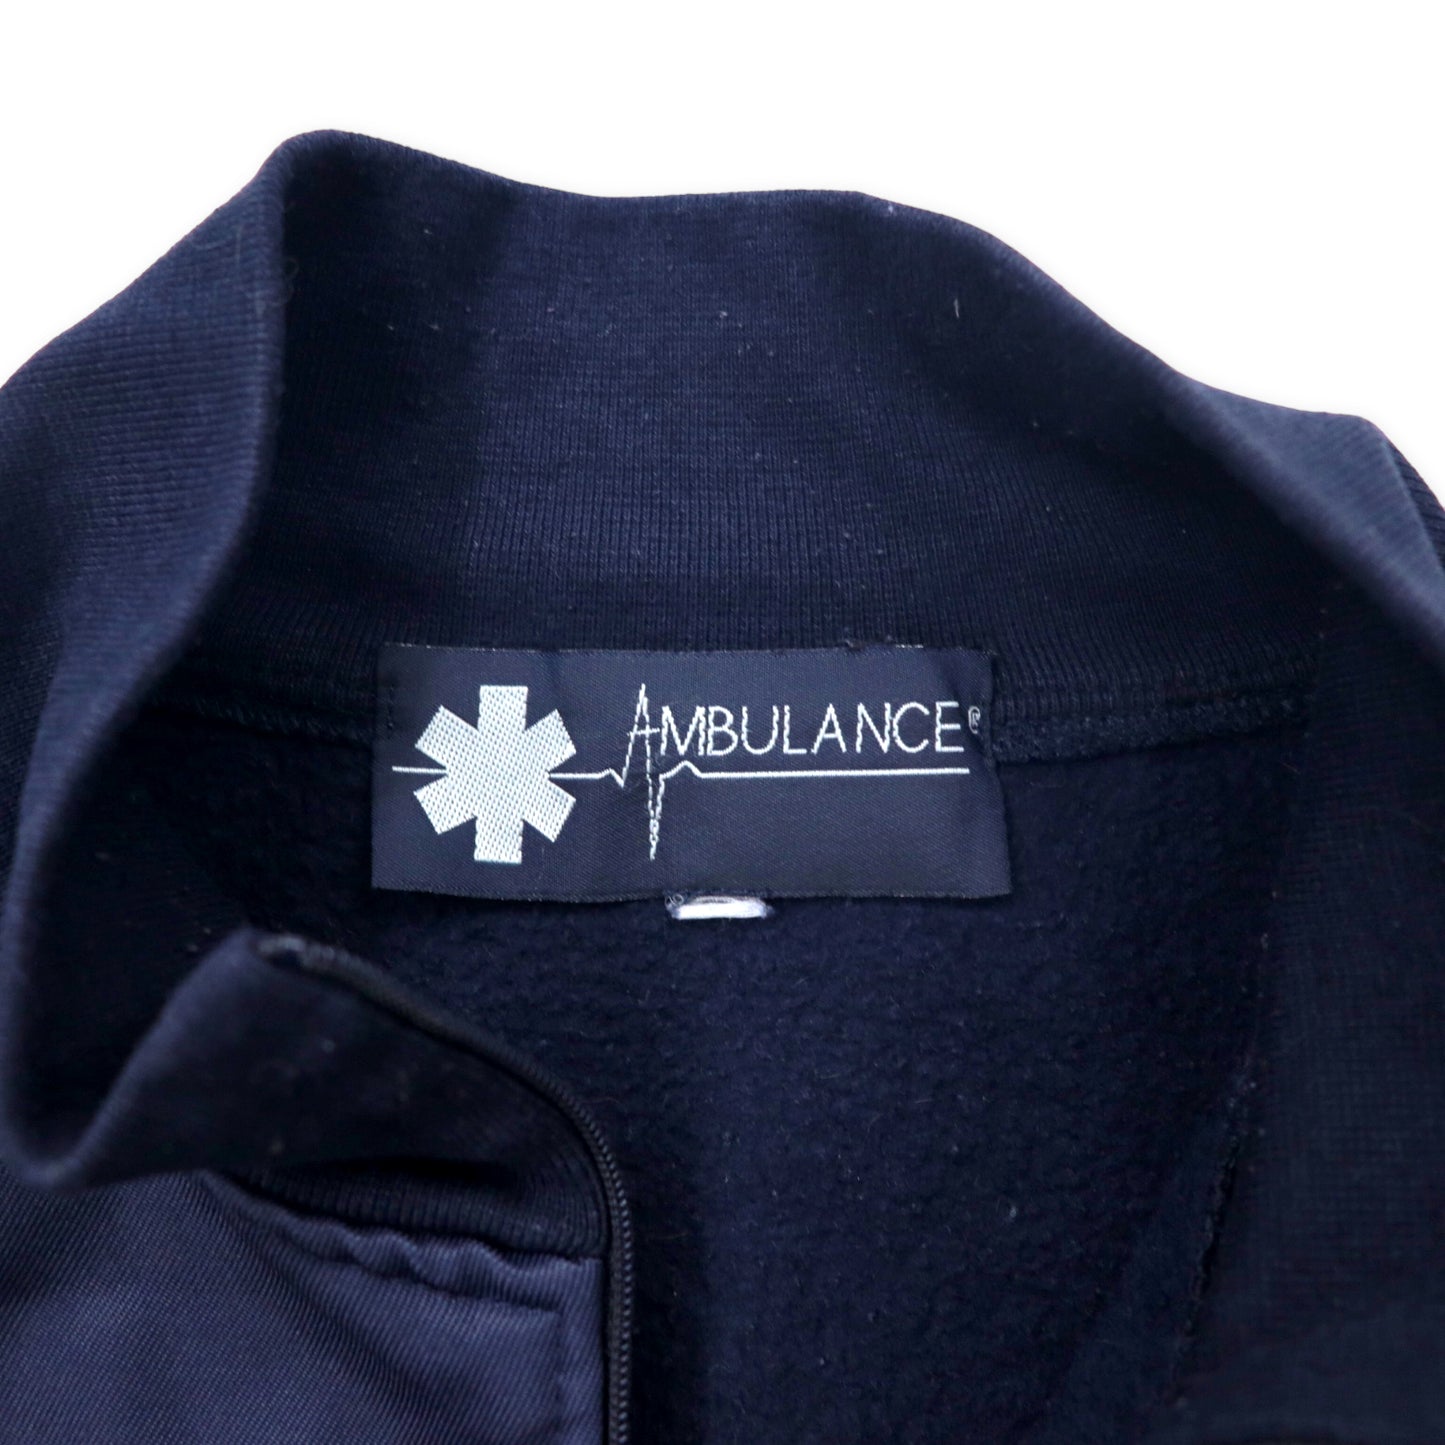 AMBULANCE ヨーロッパ製 ユーロワーク ハーフジップ スウェットシャツ 3XL ネイビー コットン ポリエステル 異素材切り替え ドローコード ビッグサイズ